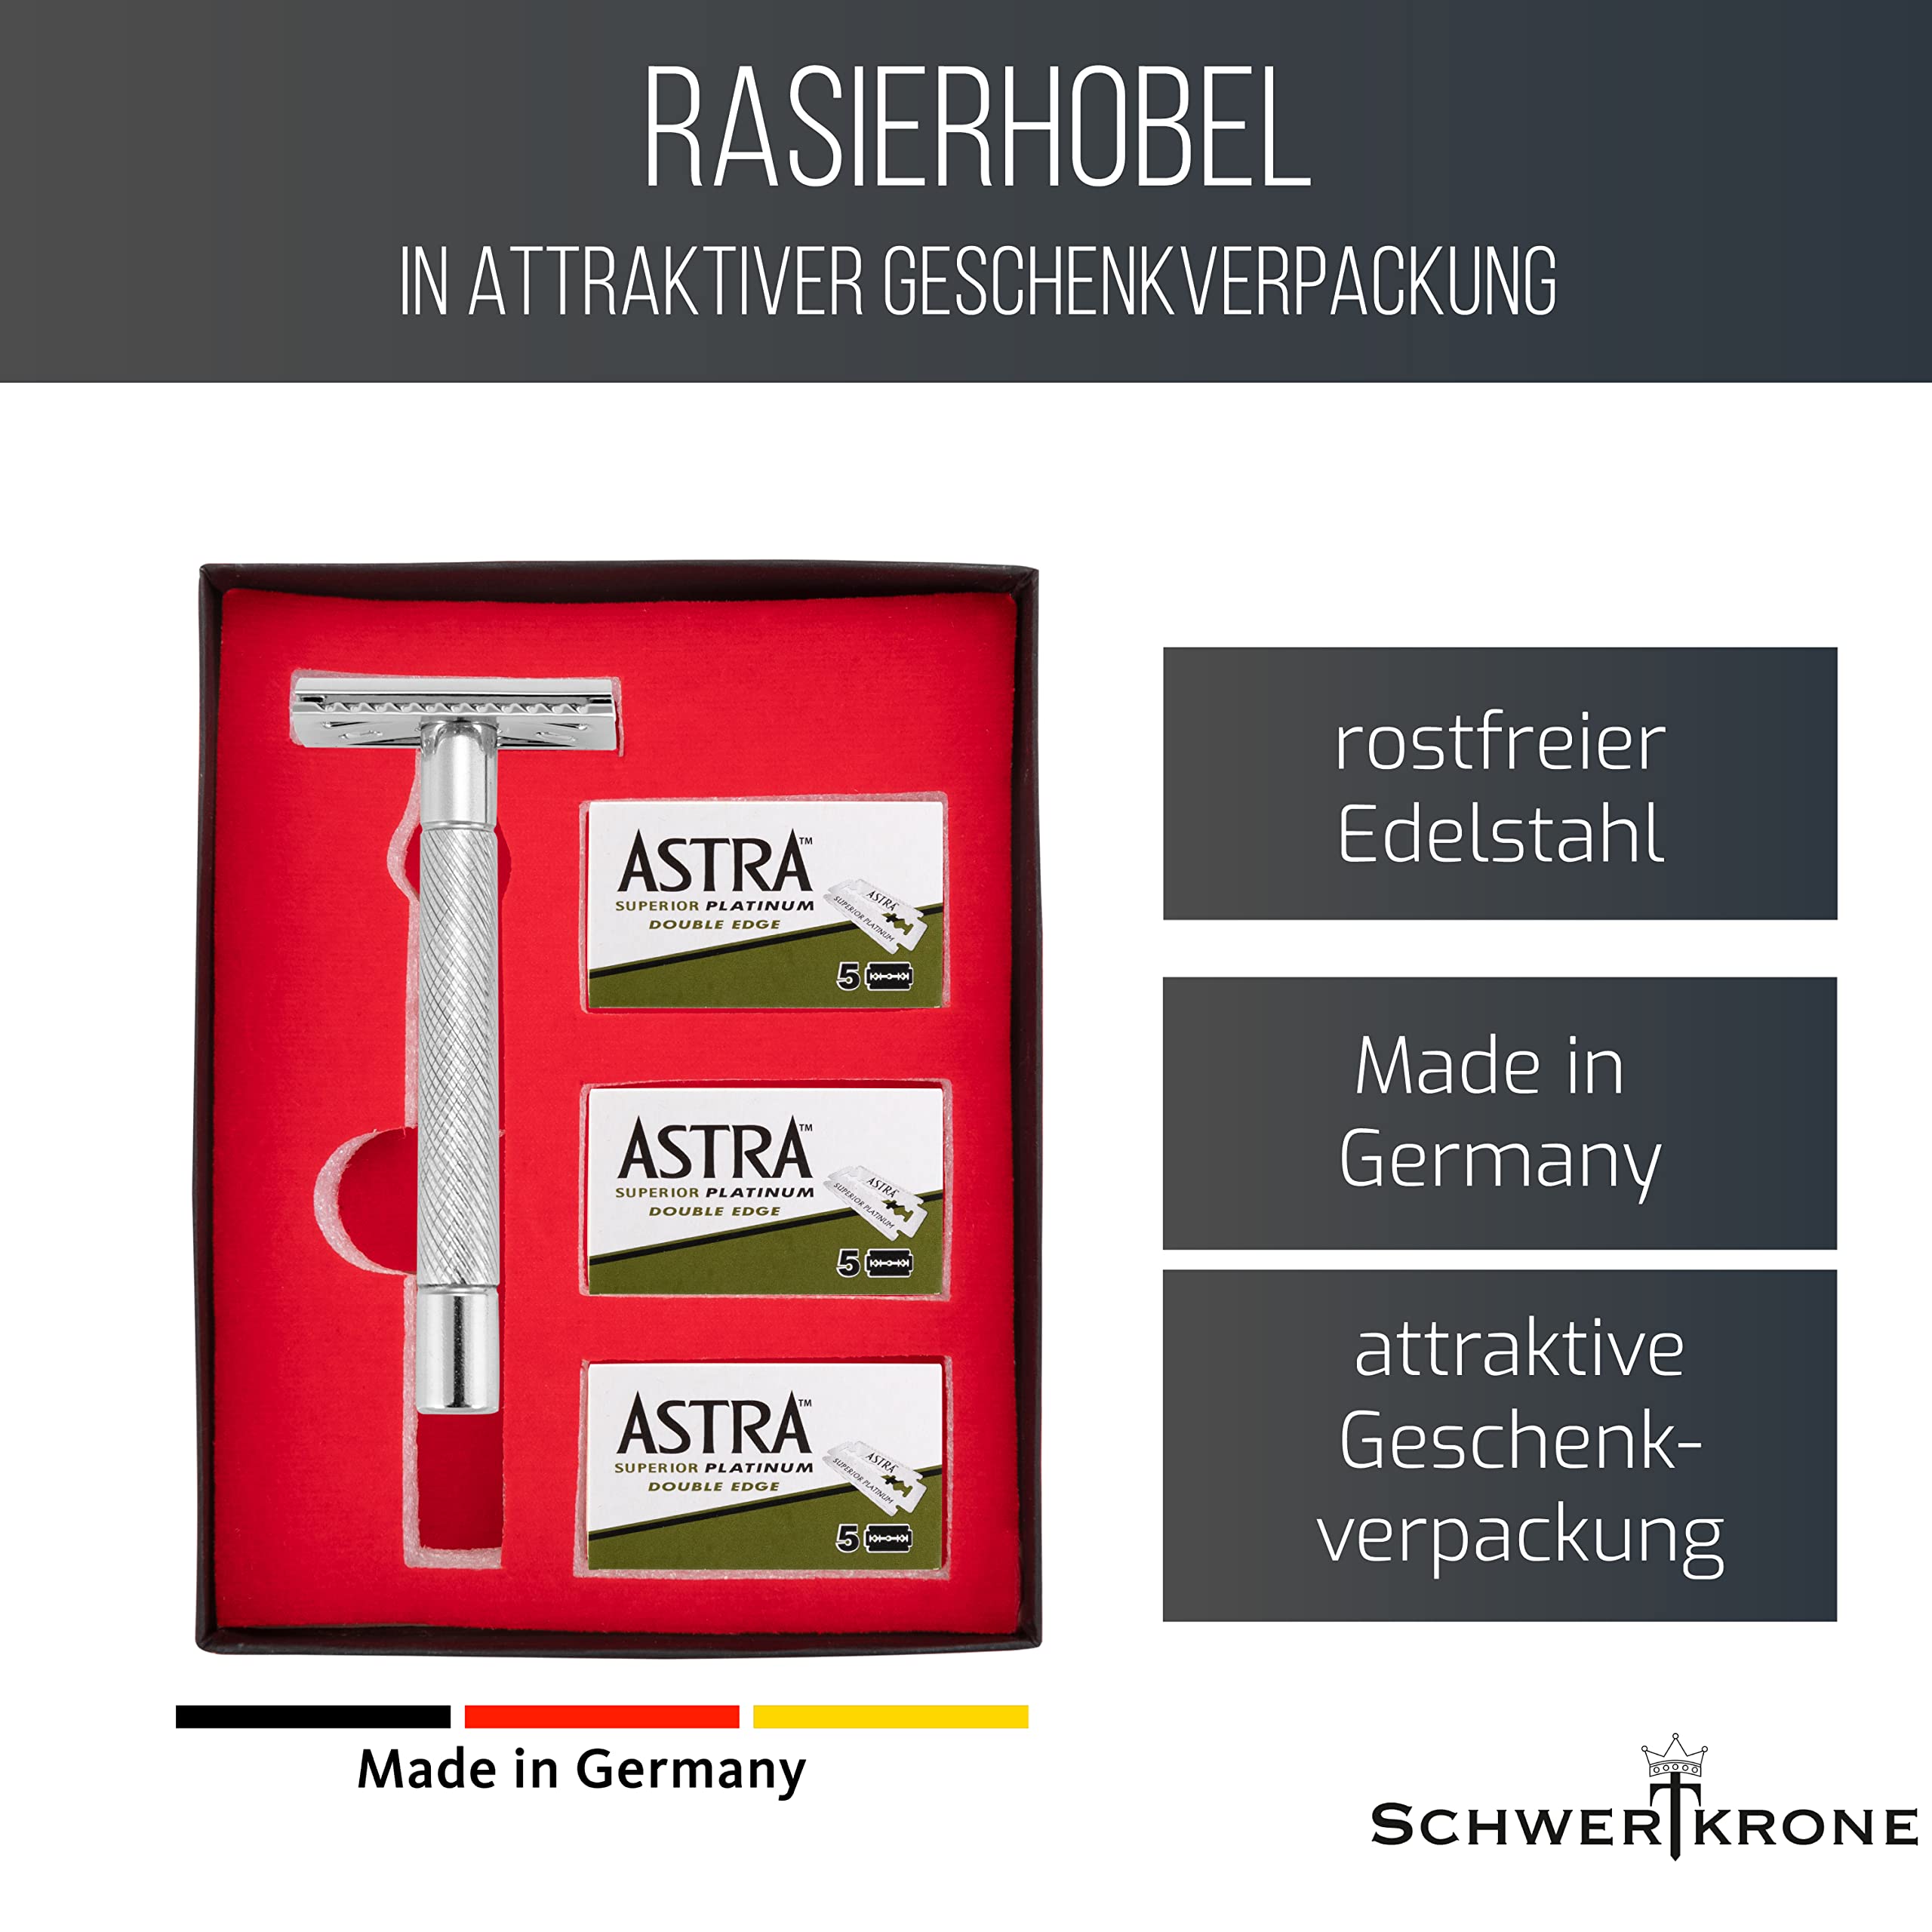 Rasierhobel Edelstahl - Made in Germany